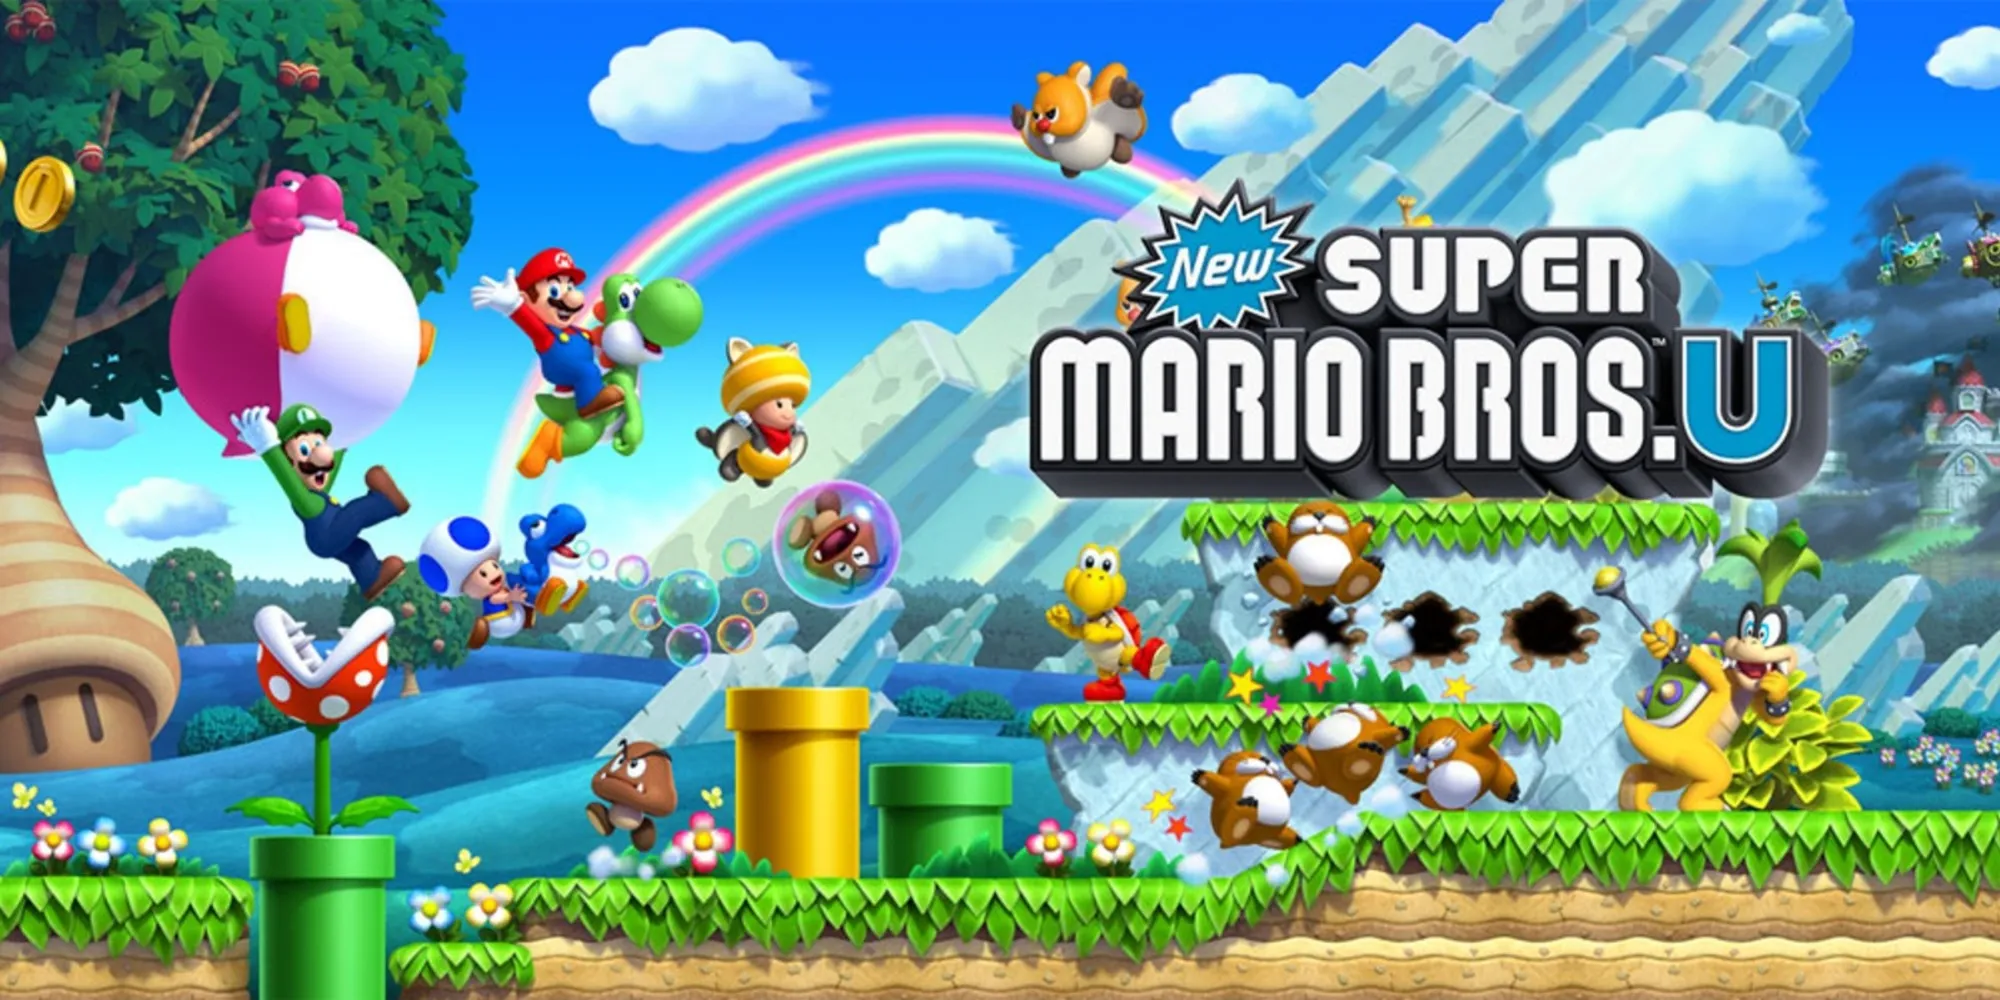 Arte promocional de New Super Mario Bros U